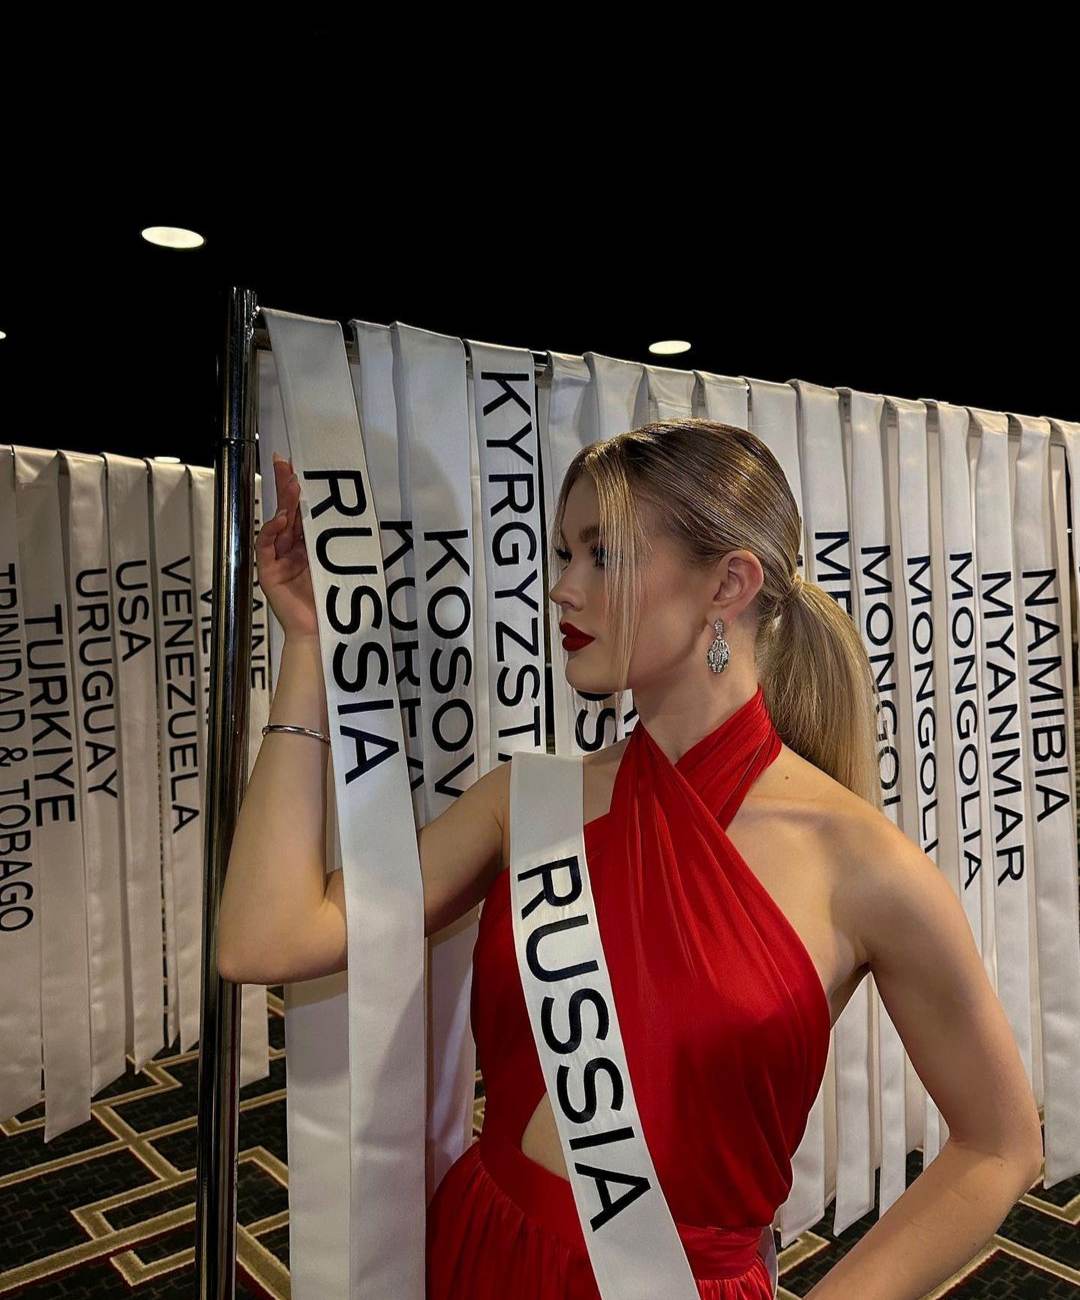 Nhan sắc nổi bật tại cuộc thi Hoa hậu Hoàn vũ 2022 của người mẫu Nga từng làm việc tại Việt Nam - Ảnh 1.